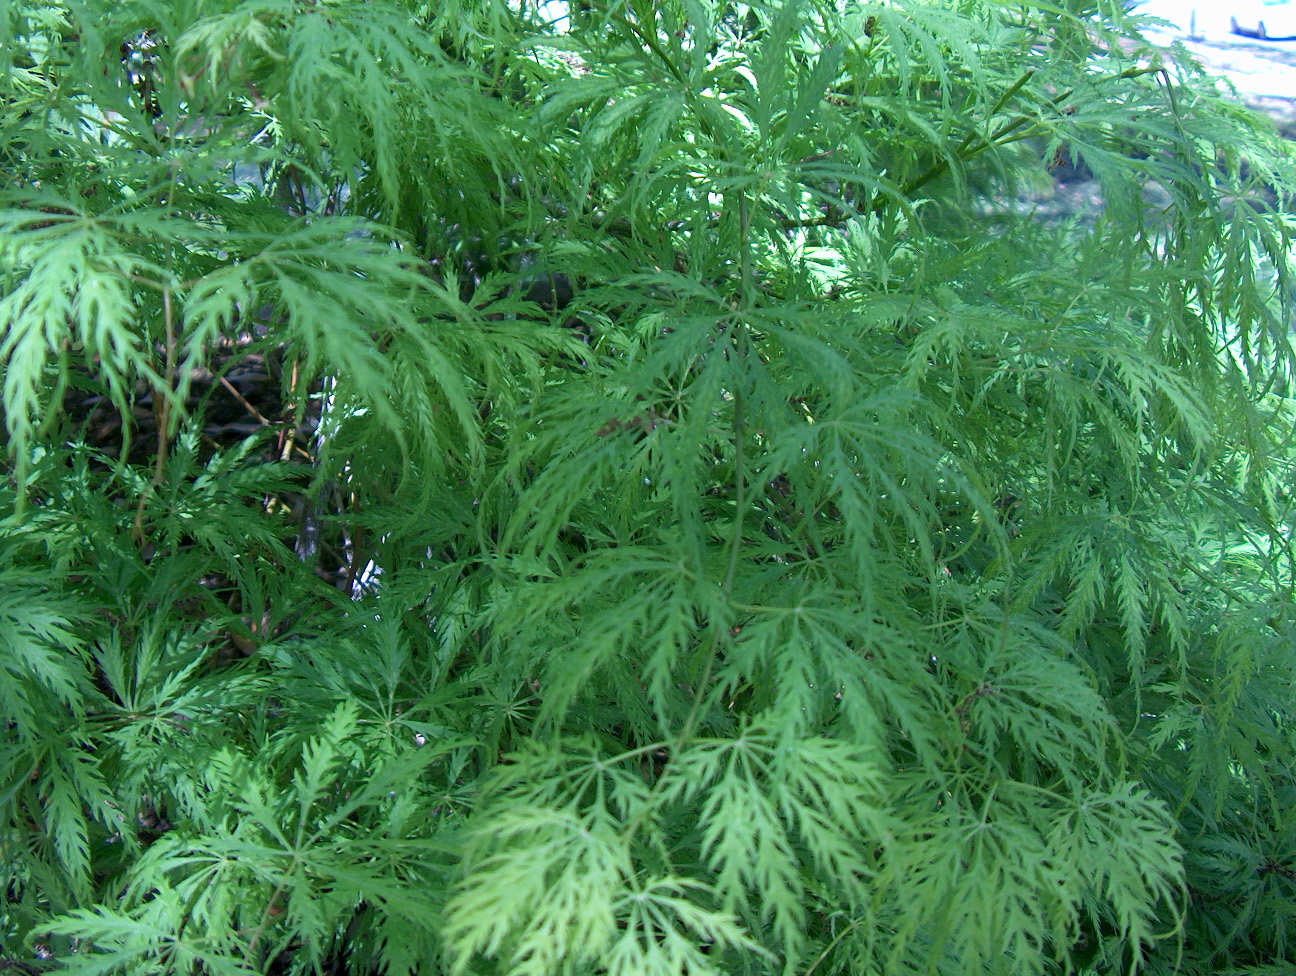 Acer palmatum dissectum 'Filigree' / Filigree Japanese Maple